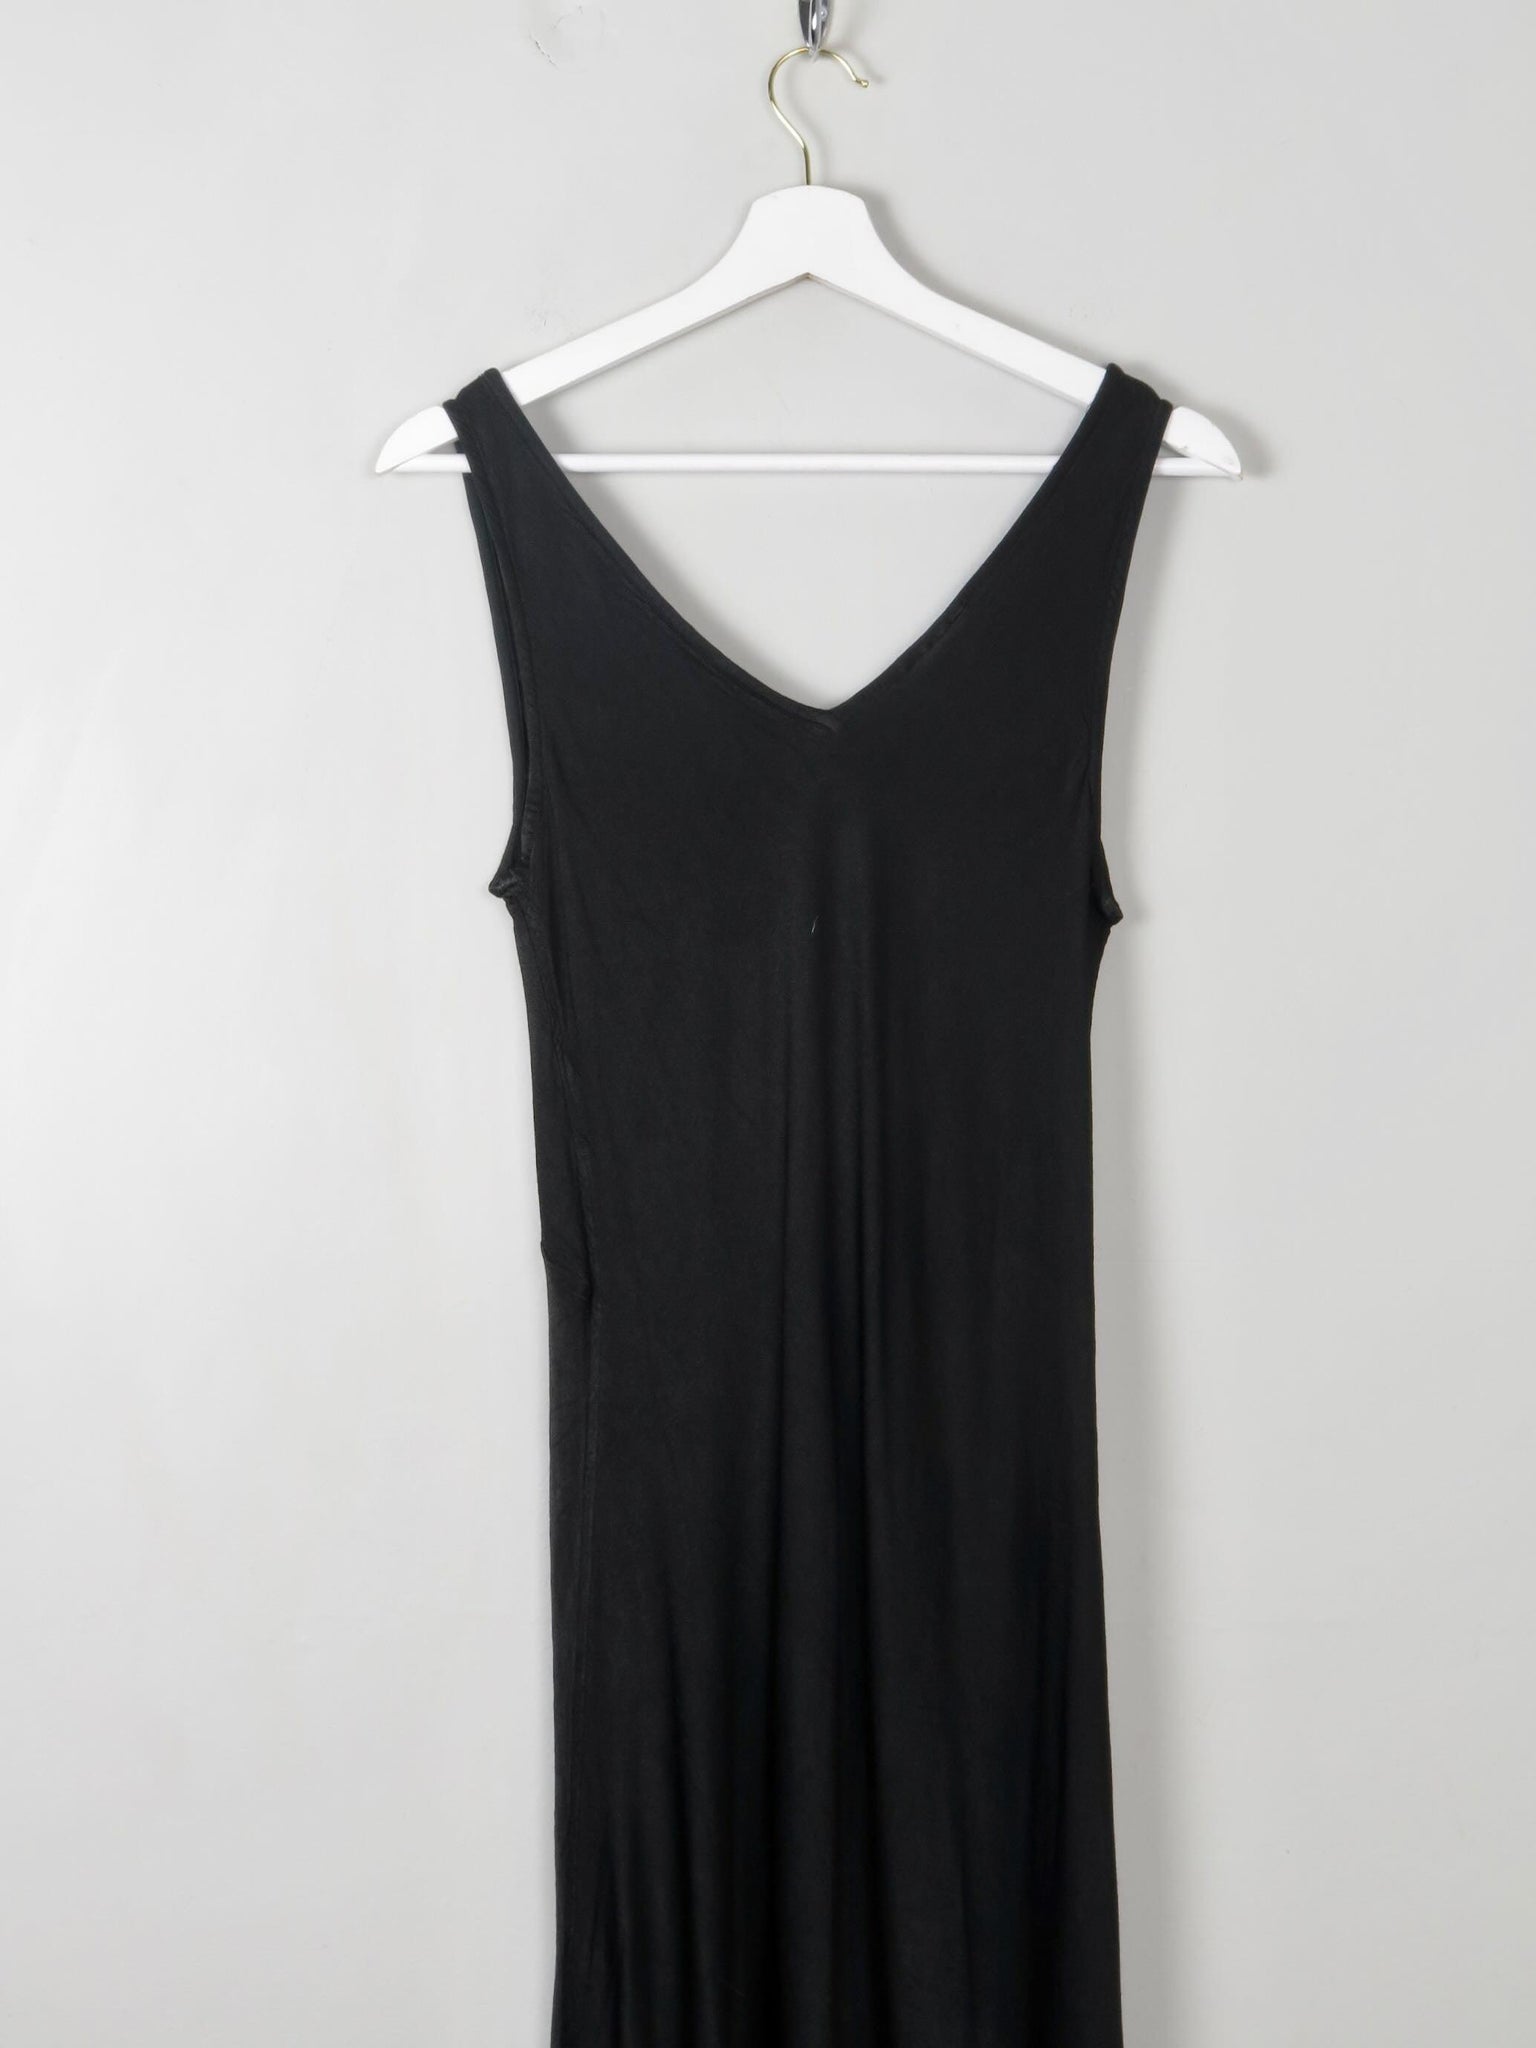 Vintage Black Satin Ghost Dress M - The Harlequin